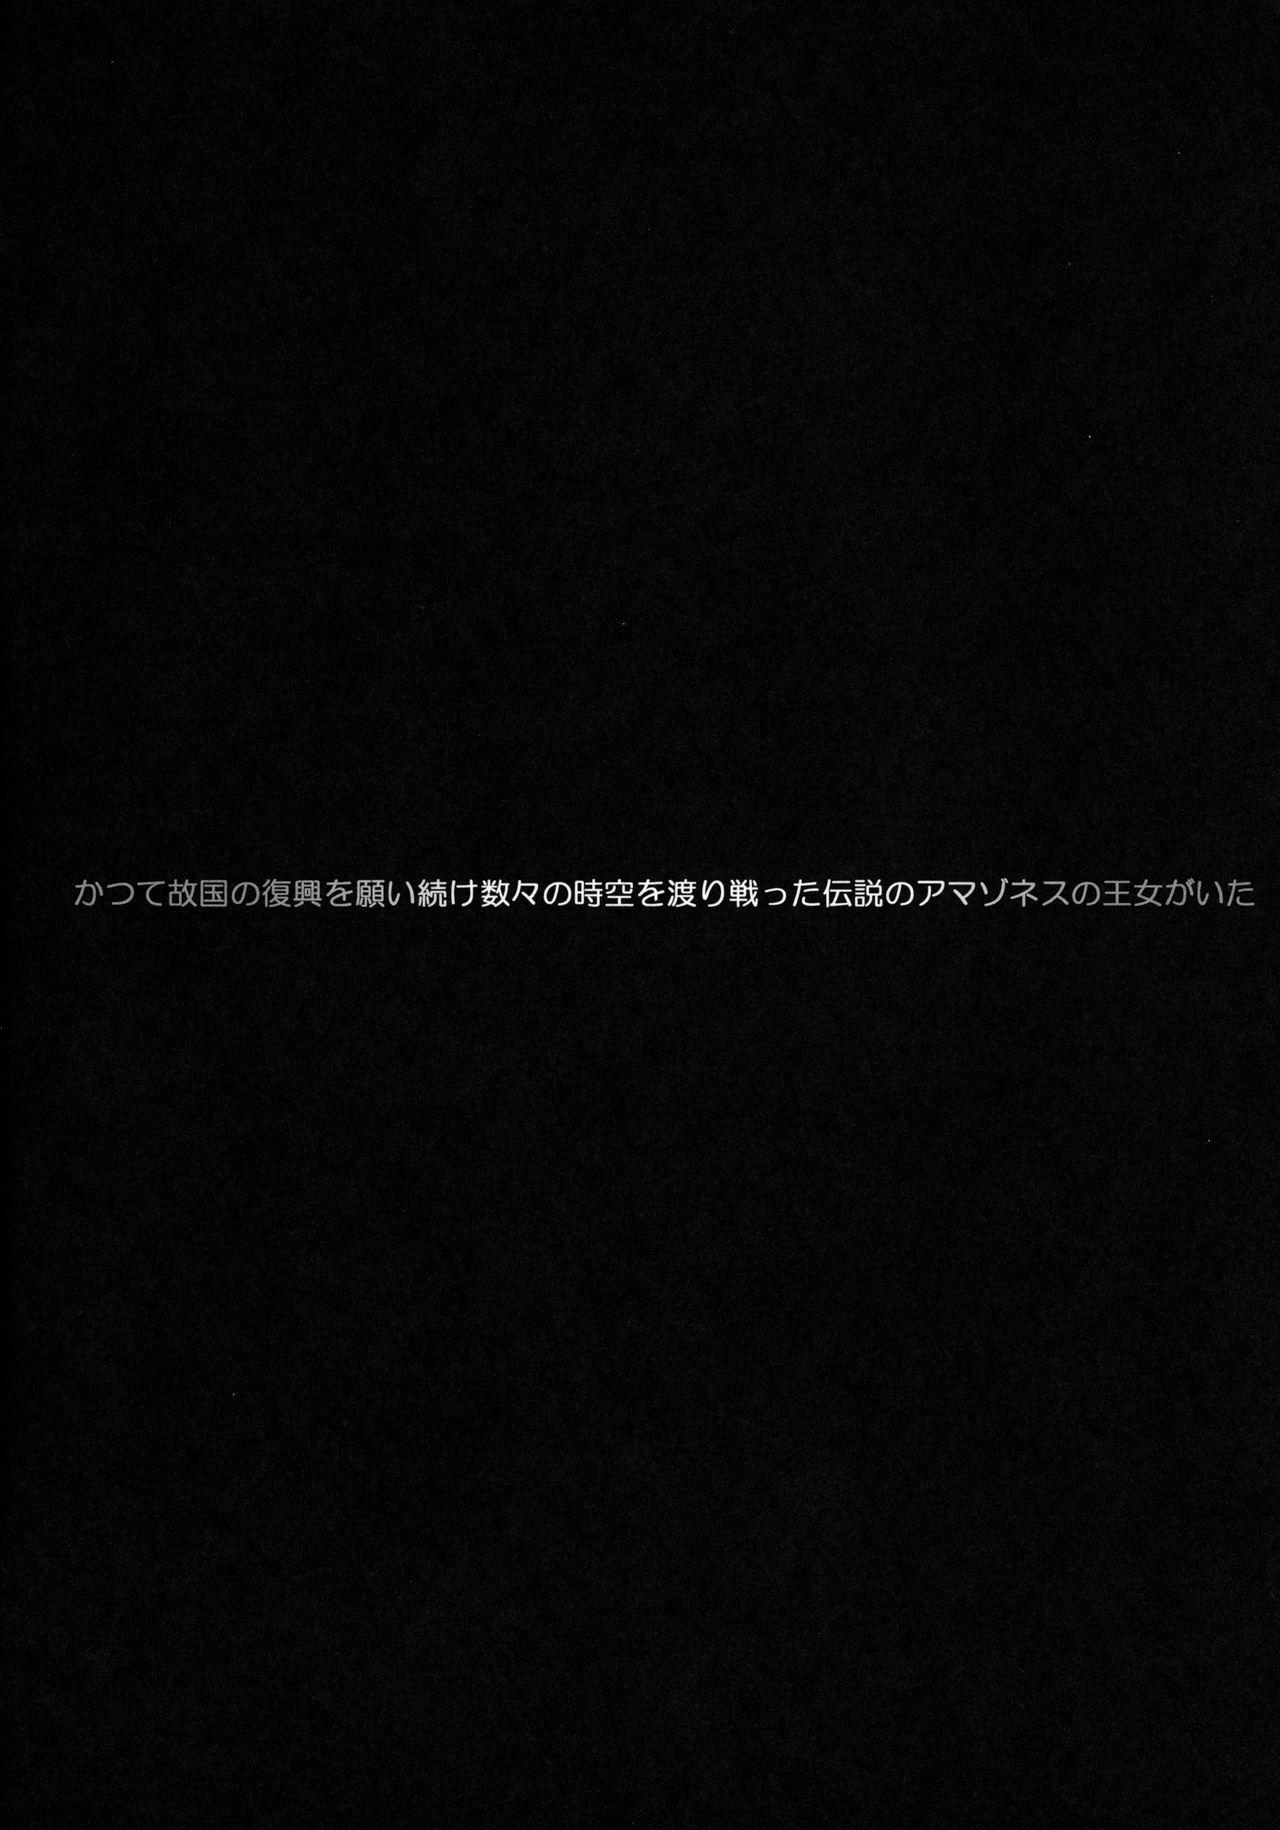 Hard Core Free Porn Seikan Densetsu TRIAEZ of NAMA - Seiken densetsu 3 Retro - Page 3